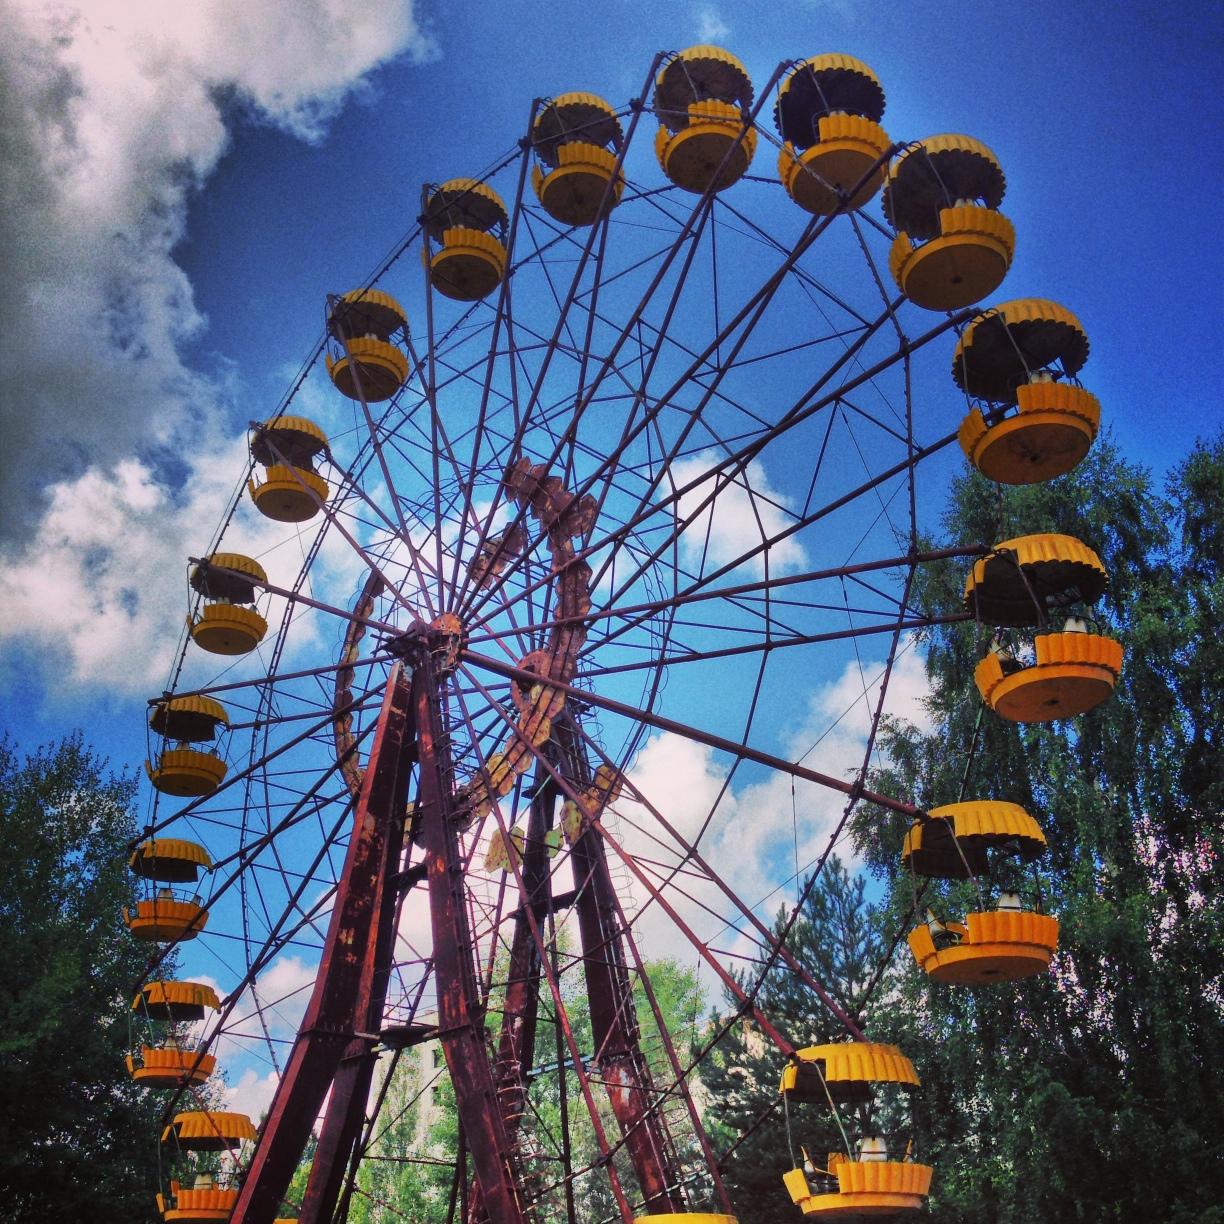 Vi åkte till Tjernobyl och Pripyat på vår semester. Fantastiskt spännande och intressant resa, skriver Anna.